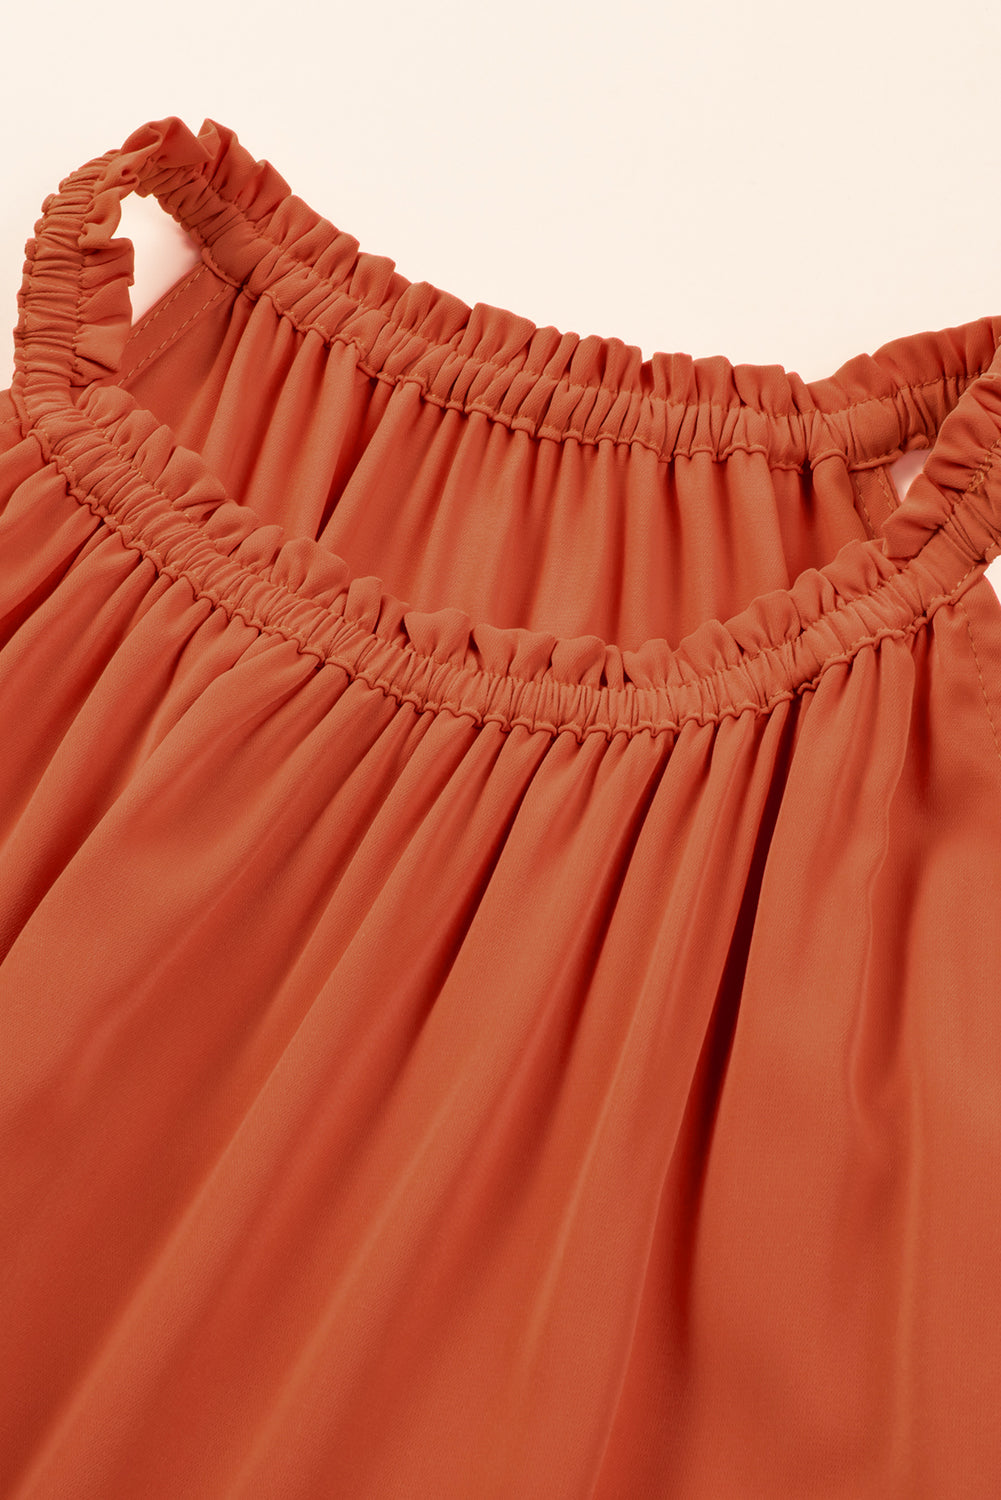 Rdeče oranžna dolga obleka brez rokavov z naboranimi robovi velike velikosti